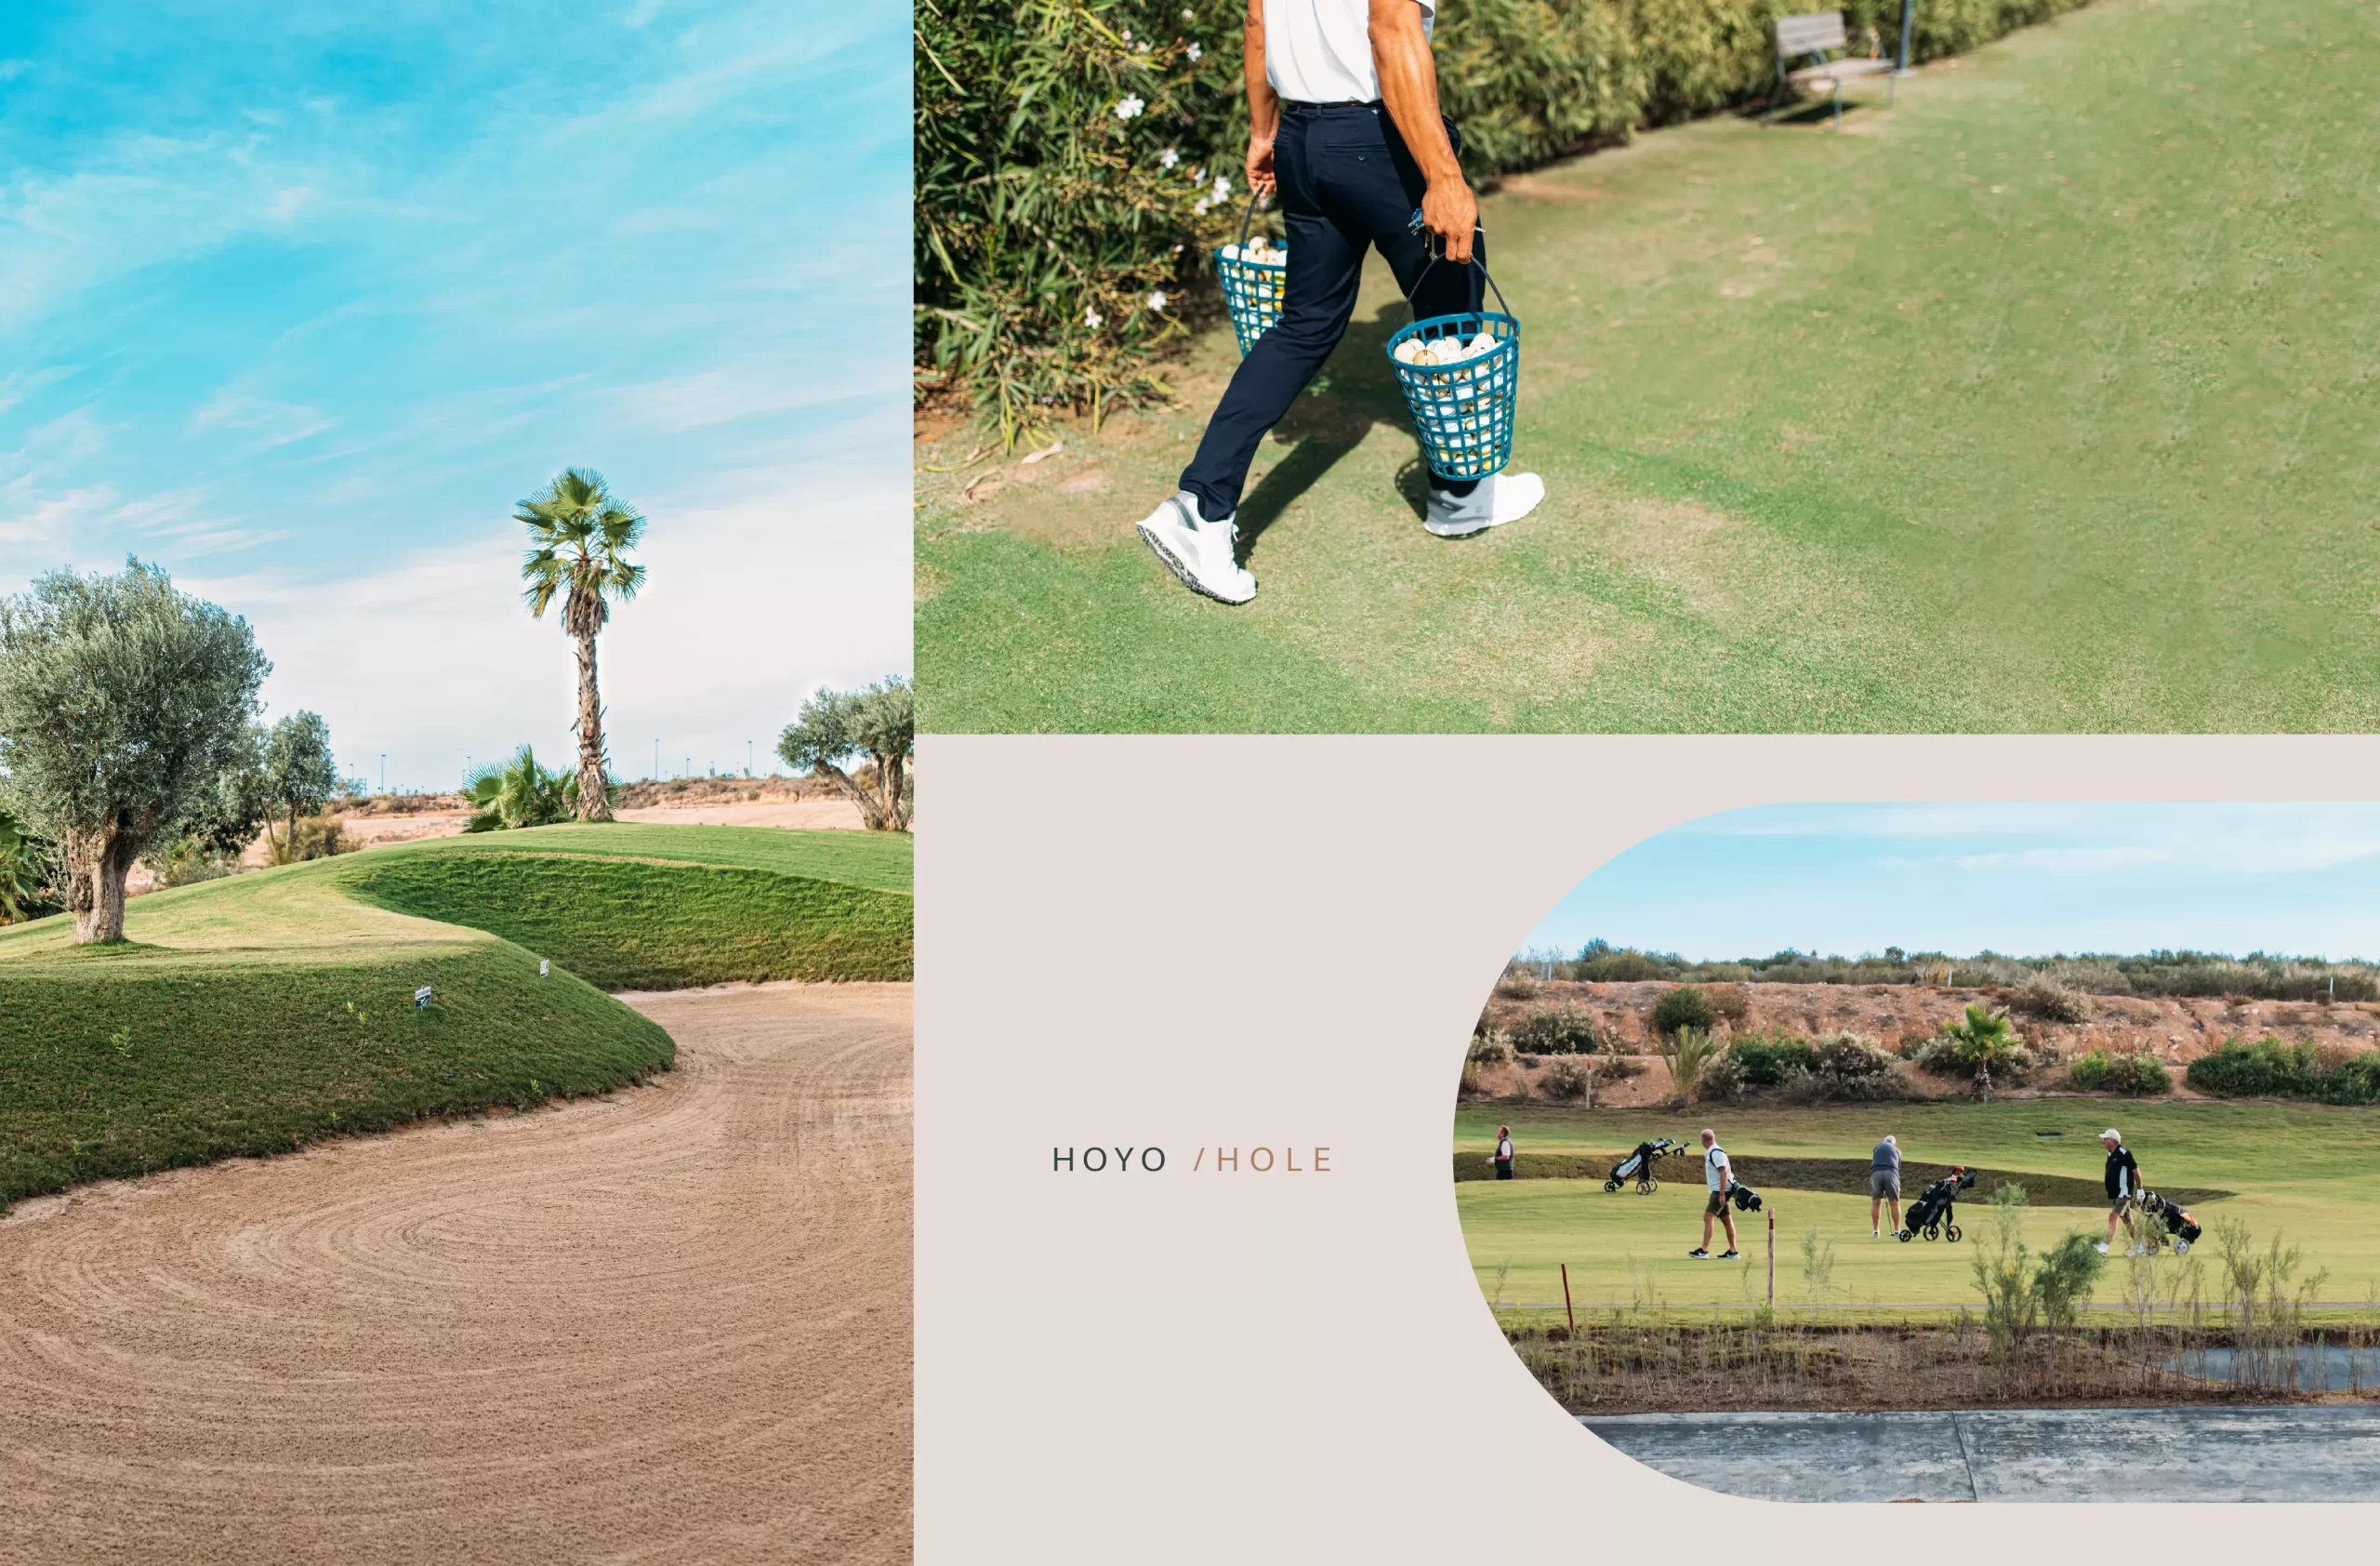 Campaña Publicidad de Golf, NEW SIERRA - Contenido audiovisual y branding para la marca